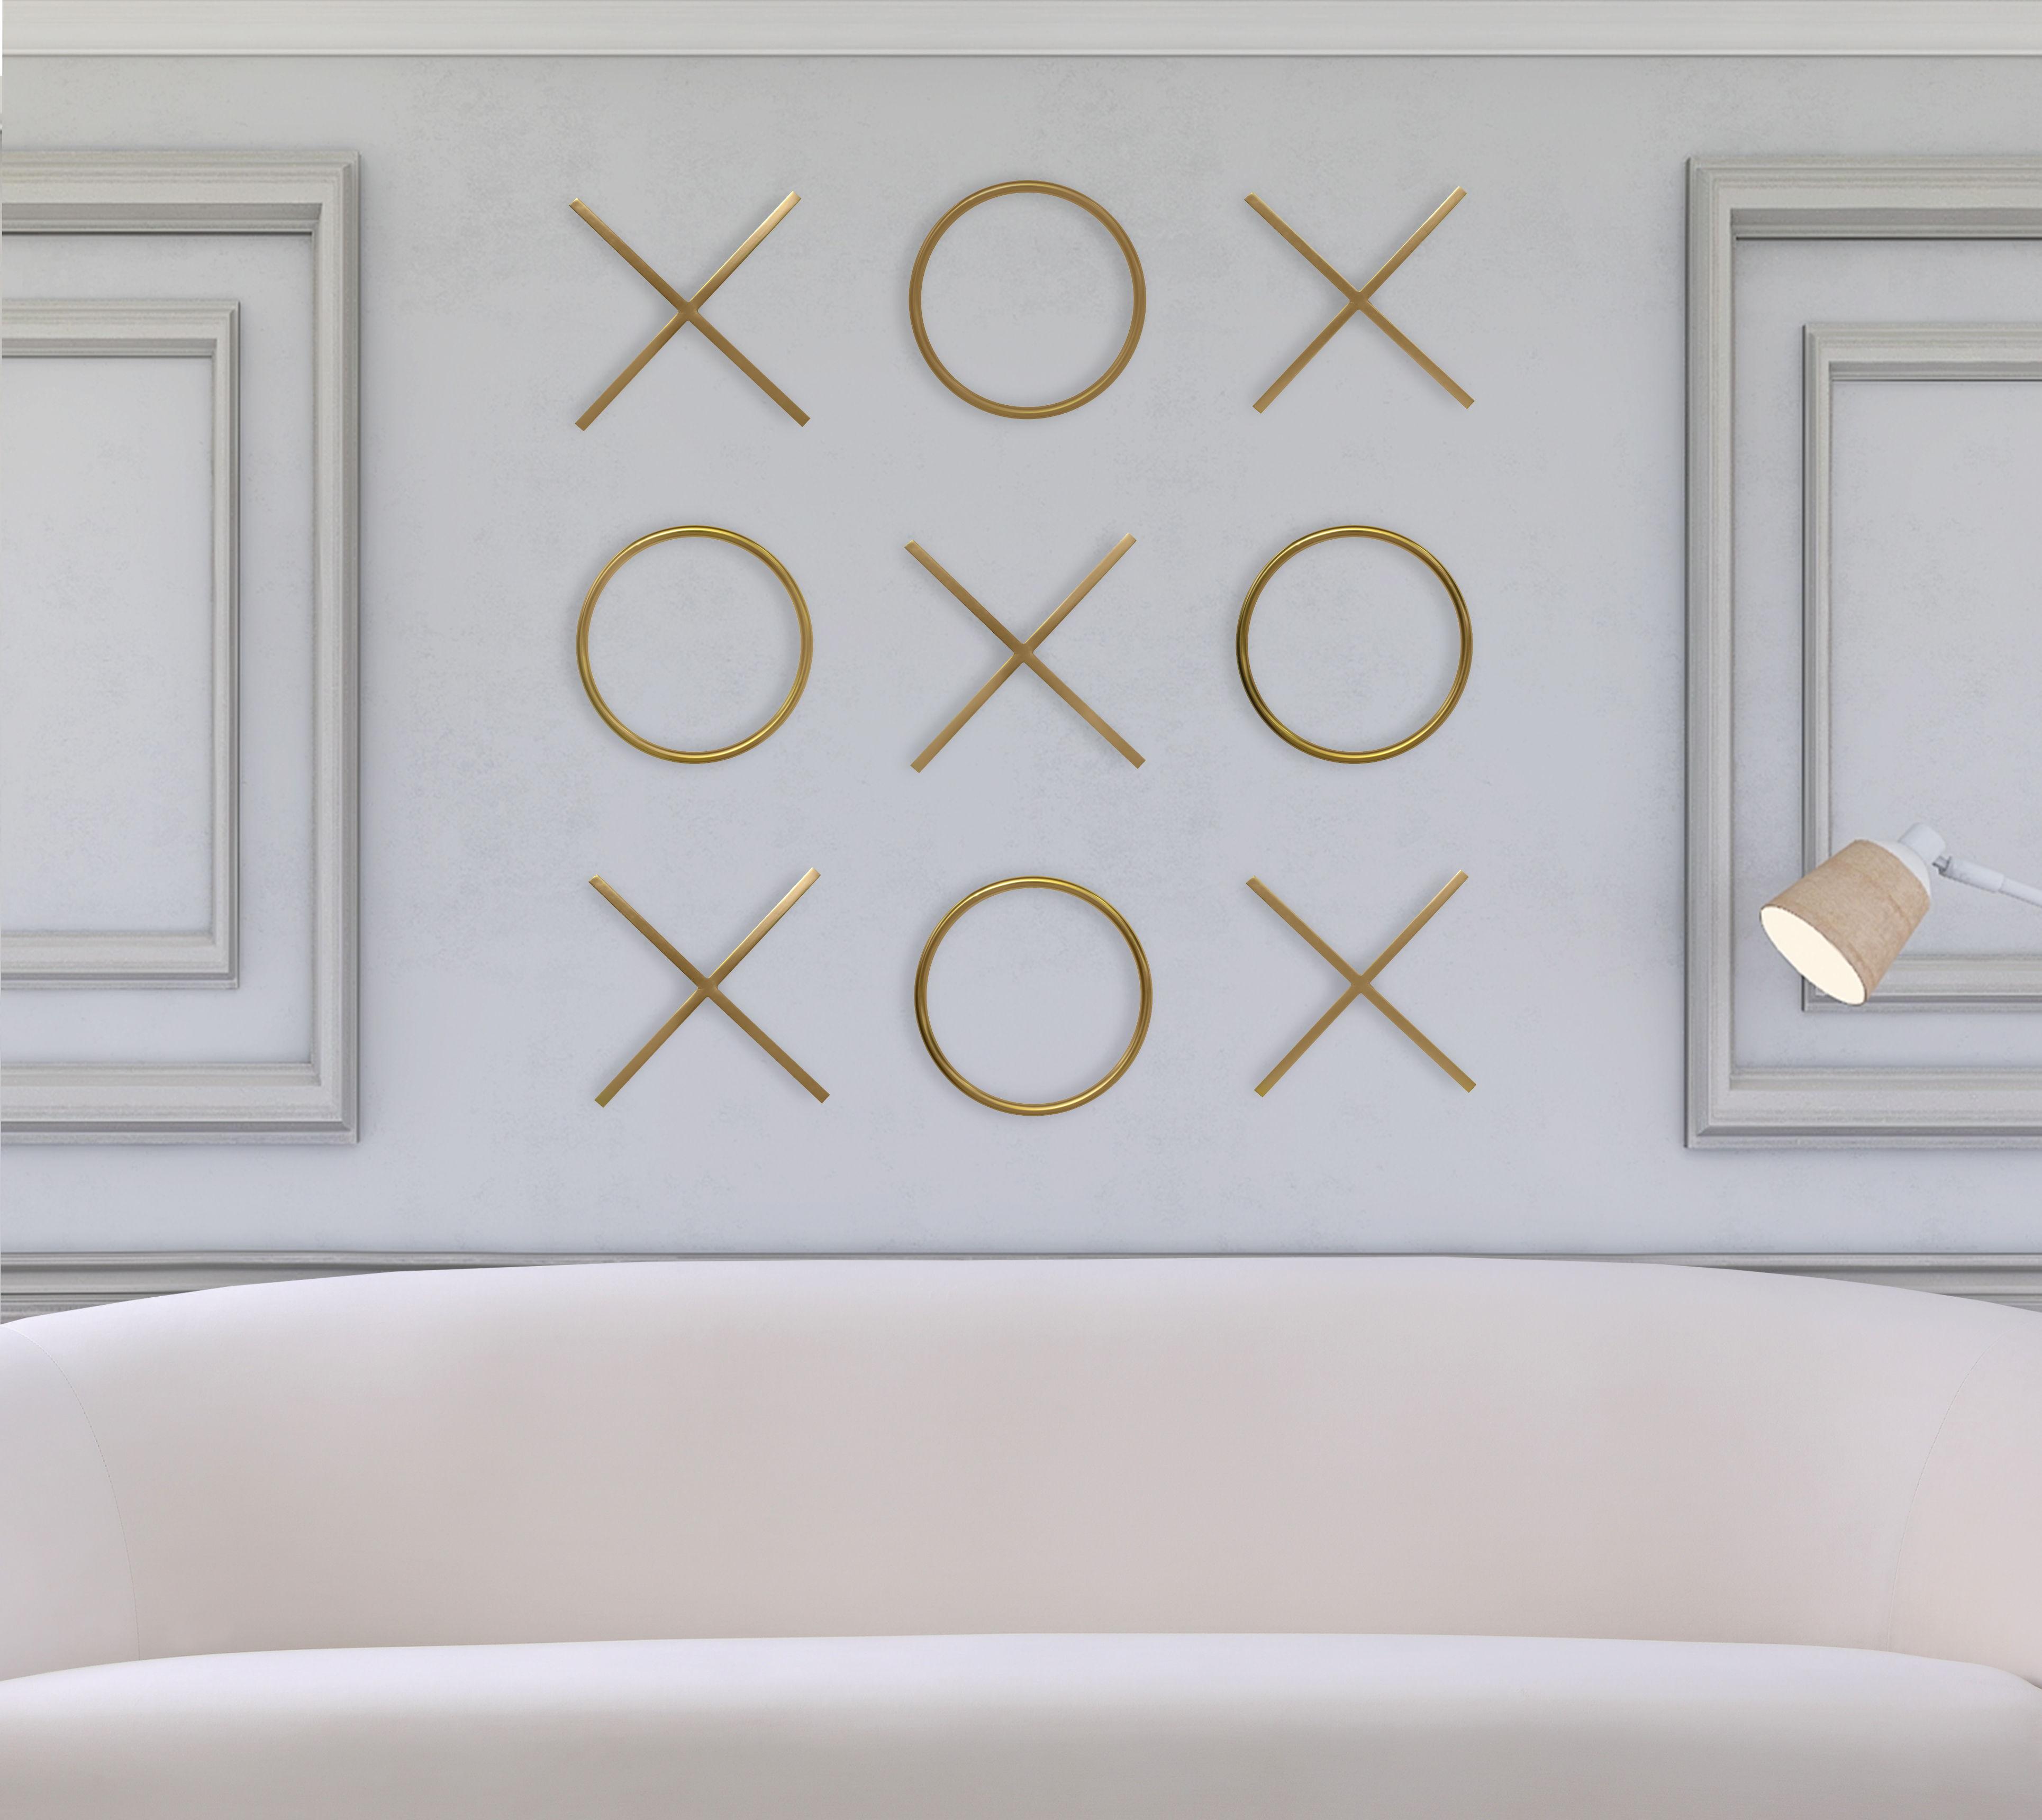 Meridian Furniture - XOXO - Wall Decor - Yellow - Steel - 5th Avenue Furniture